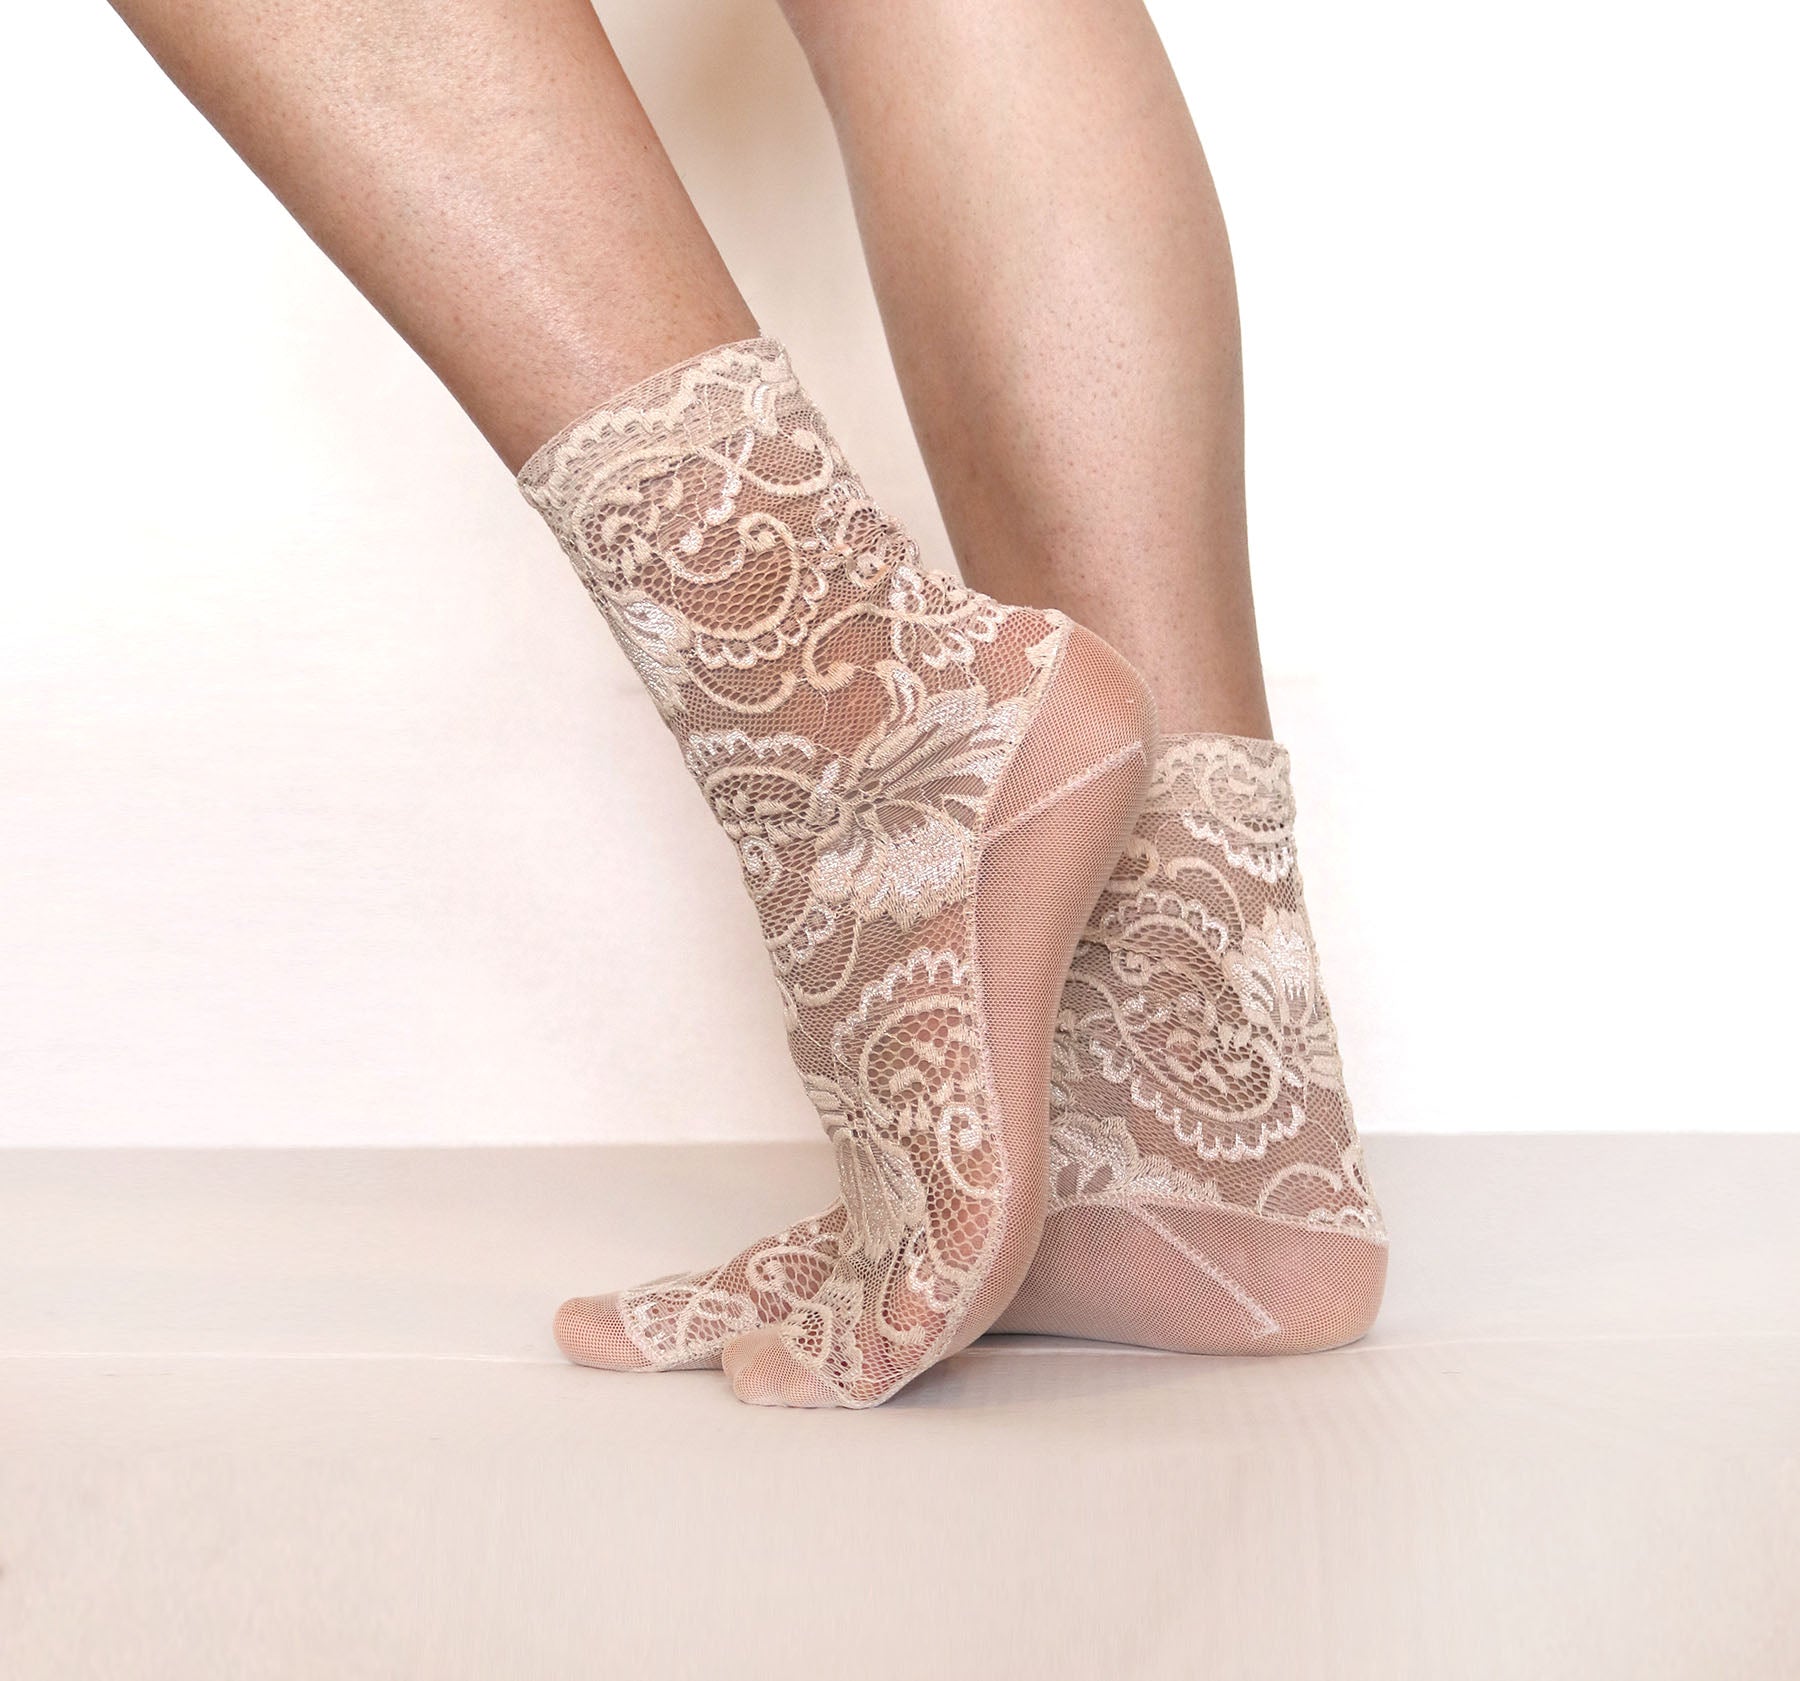 Mesh Socks. Sheer Nylon Socks. Homemade Socks. Ankle Socks. Womens